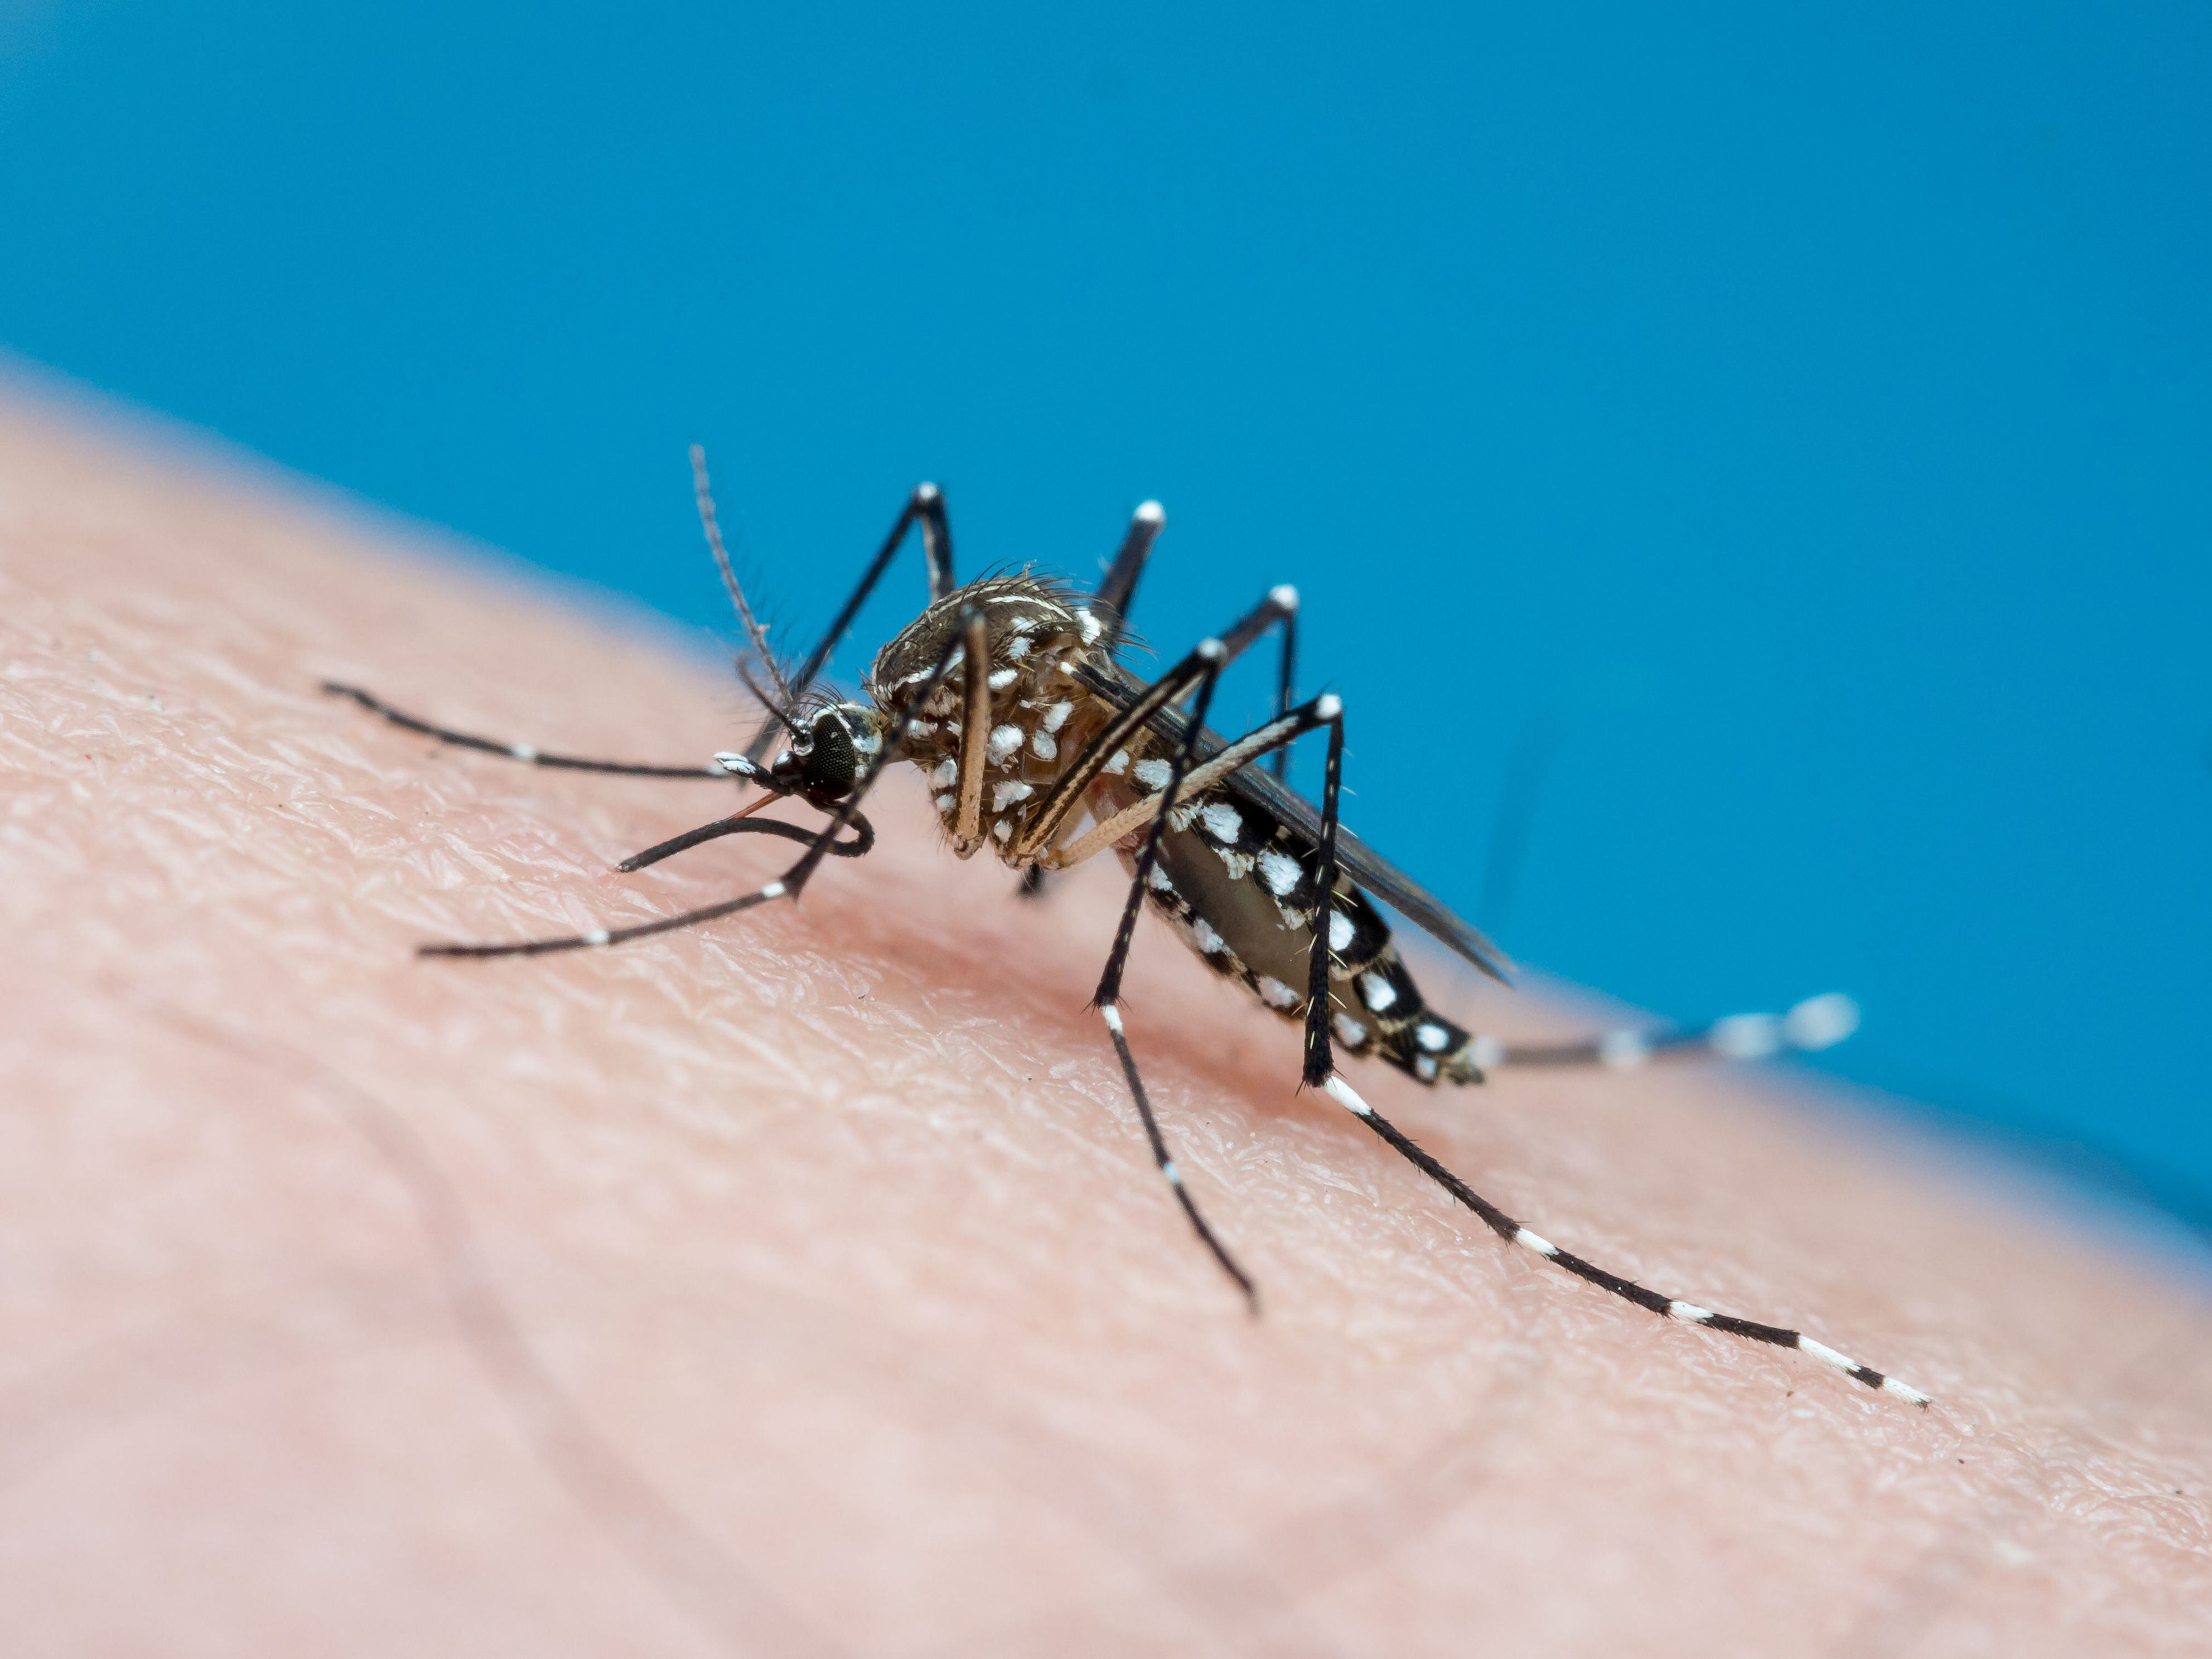 alerta amarilla por dengue en chile: cómo identificar si estoy contagiado y cuándo debería ir al médico